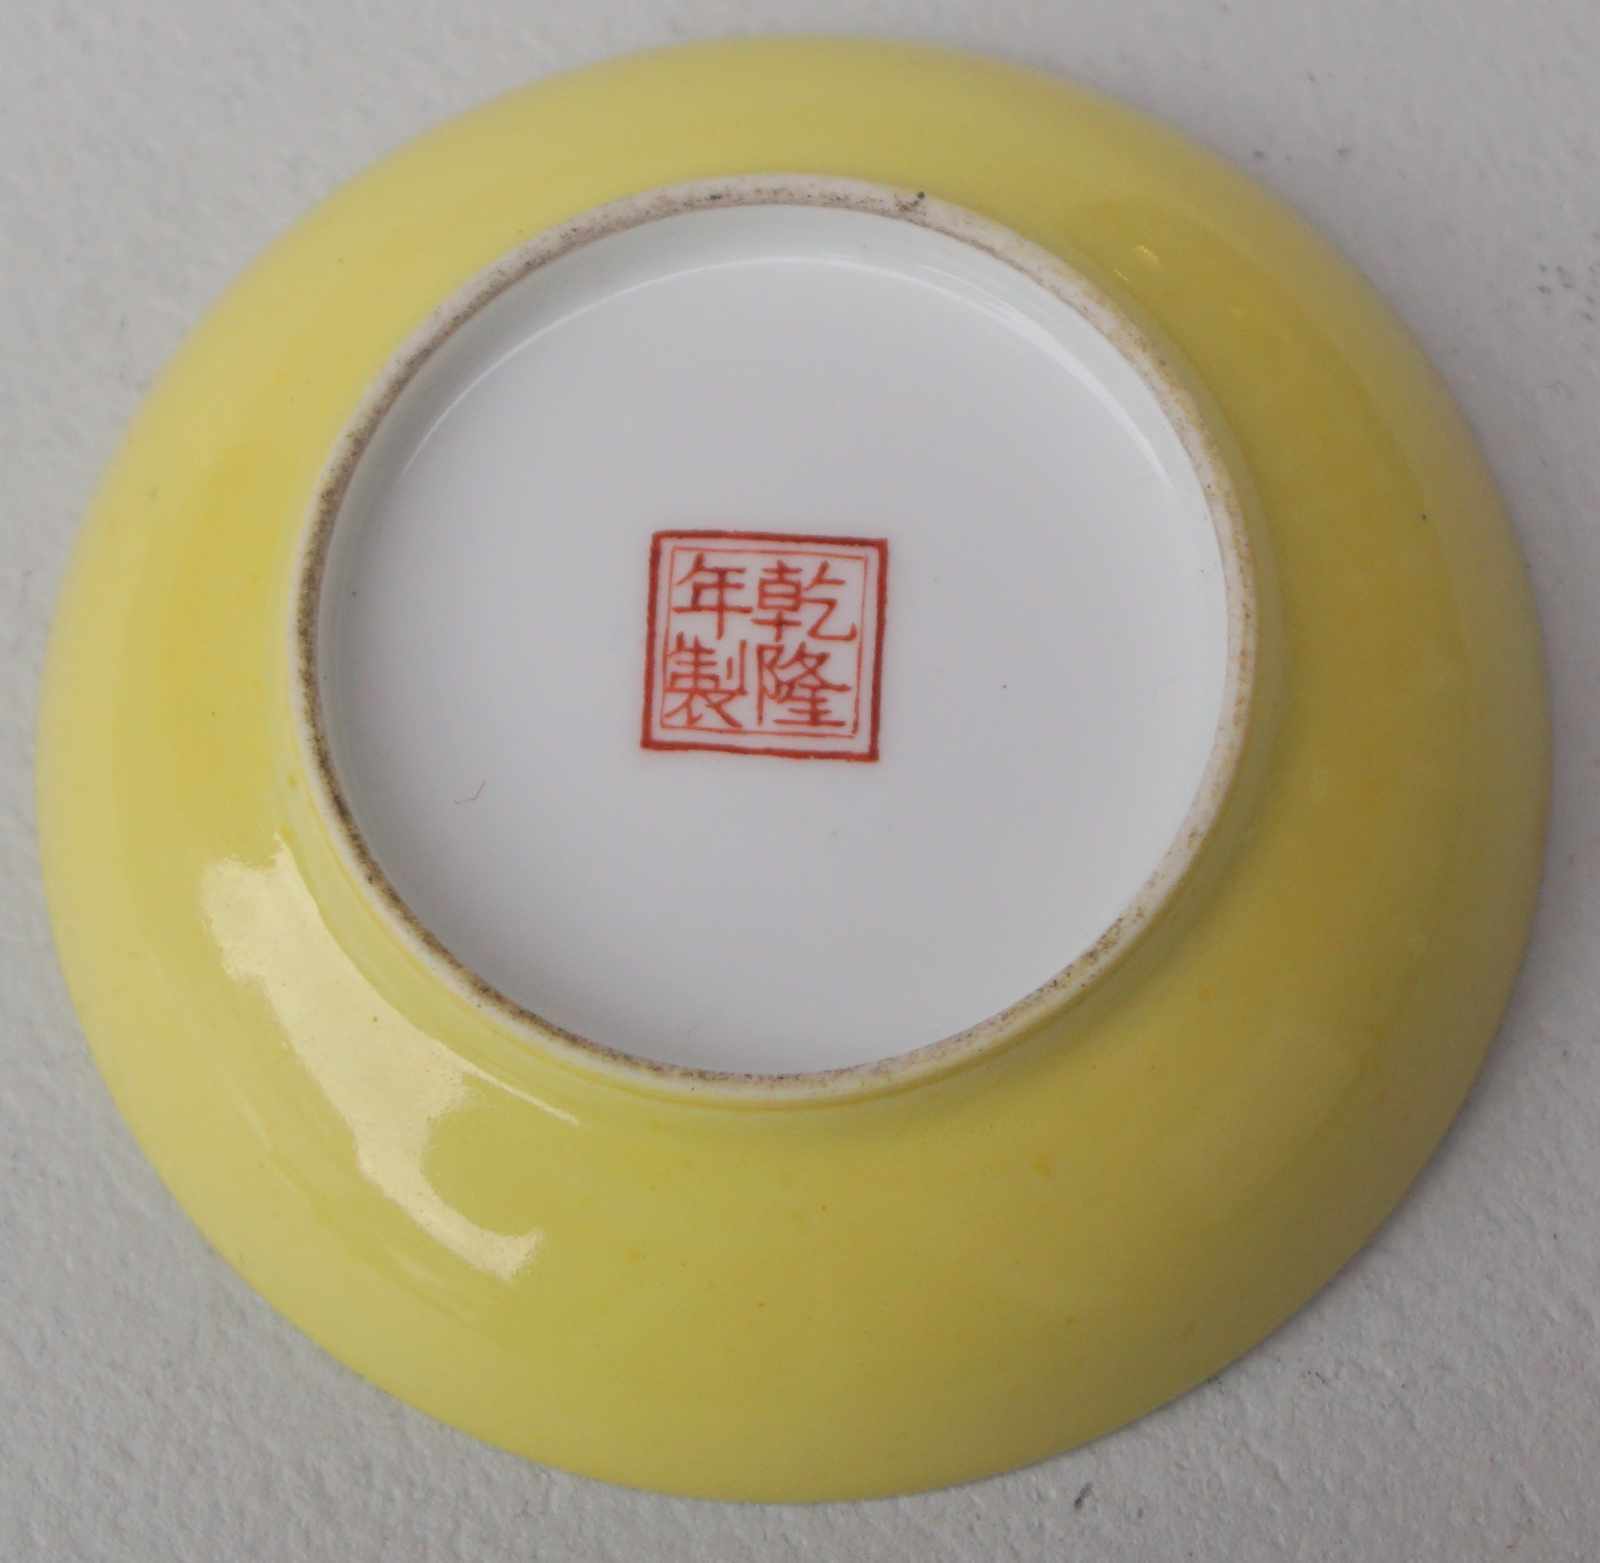 Kleiner Teller mit idealer Stadtansicht Polychrome aufgalsurmalerei, gelber Fond, guter Zustand, - Image 2 of 2